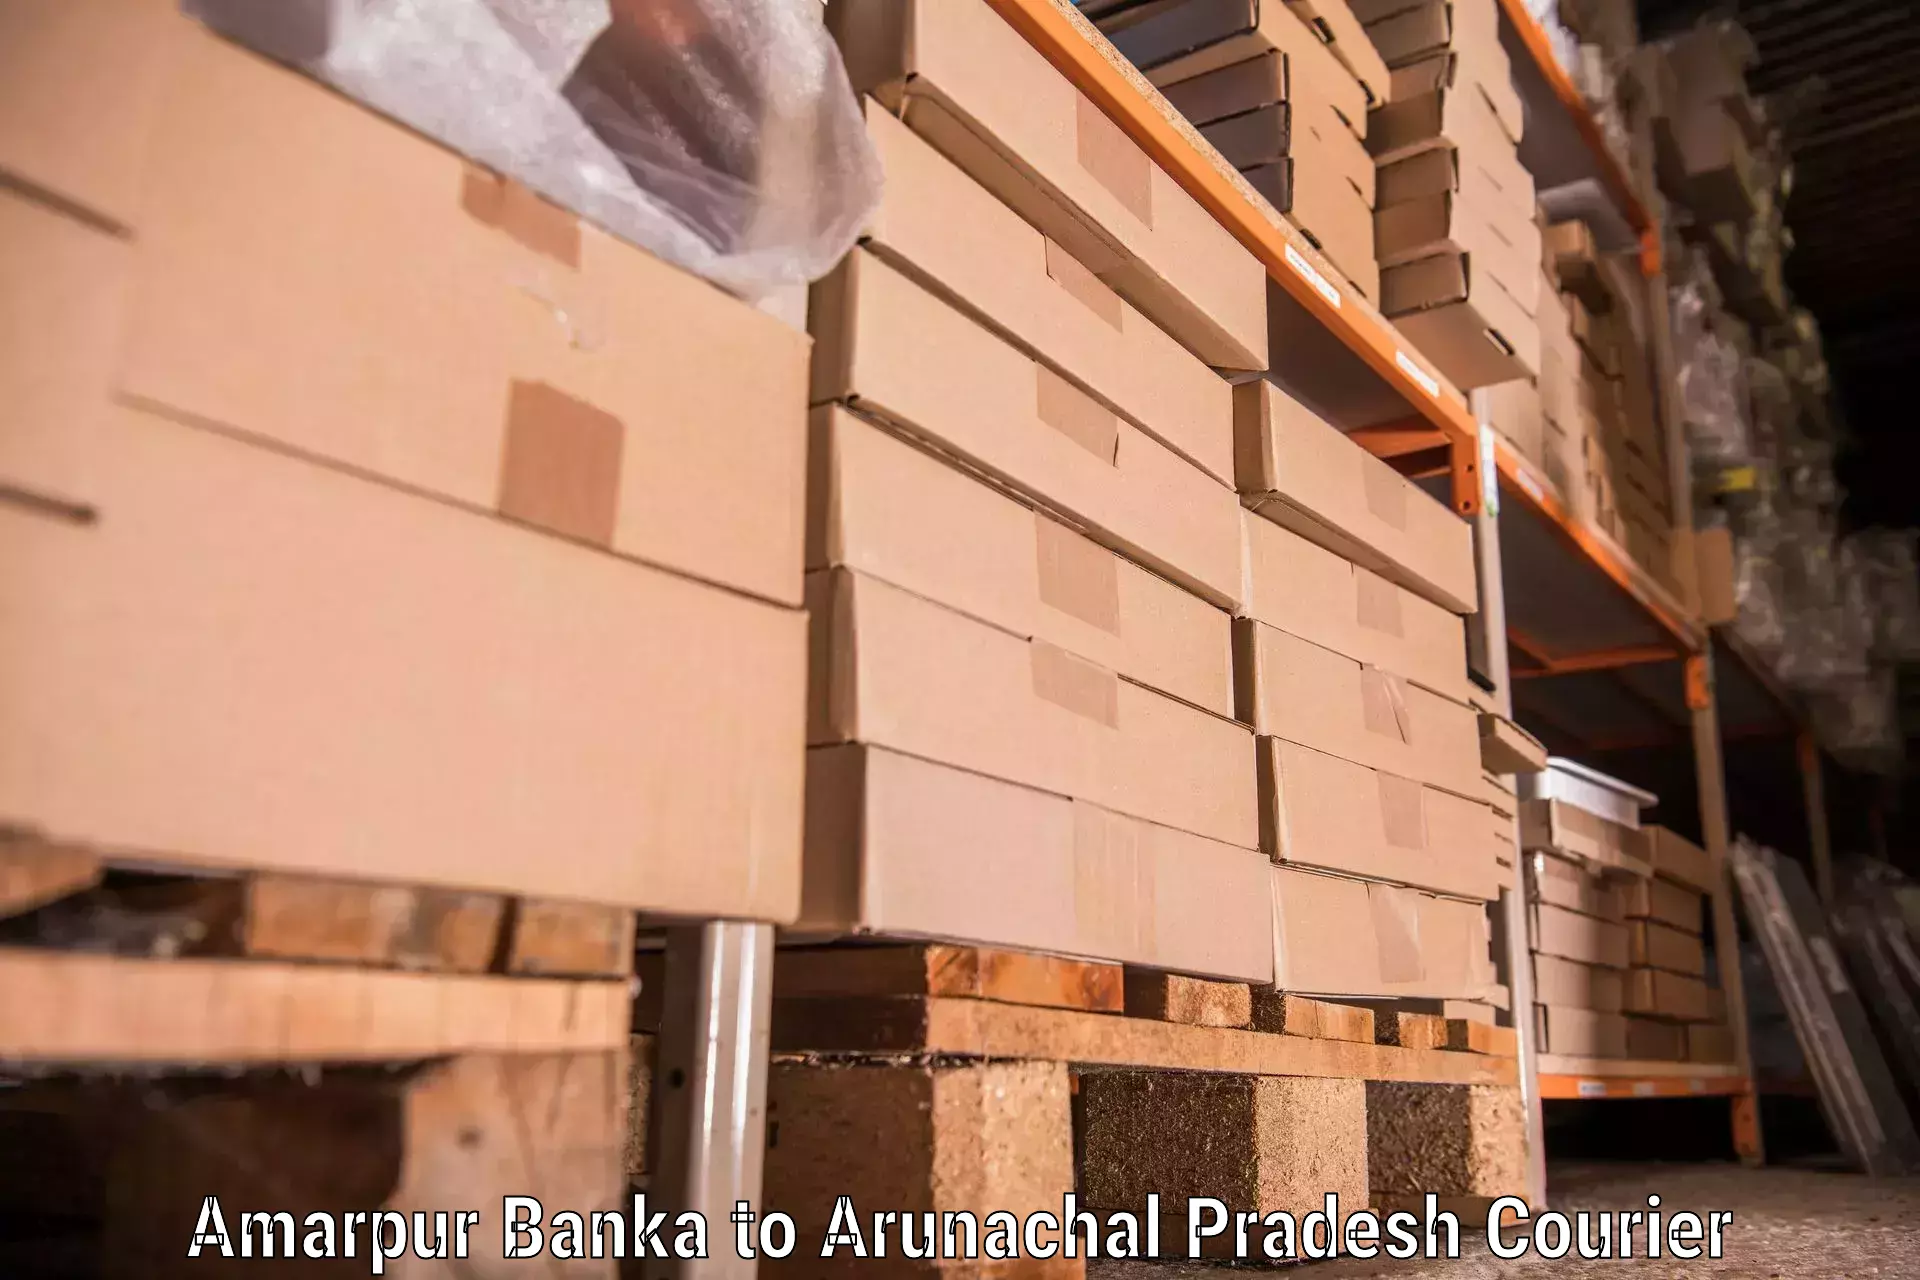 Quality moving company Amarpur Banka to Changlang